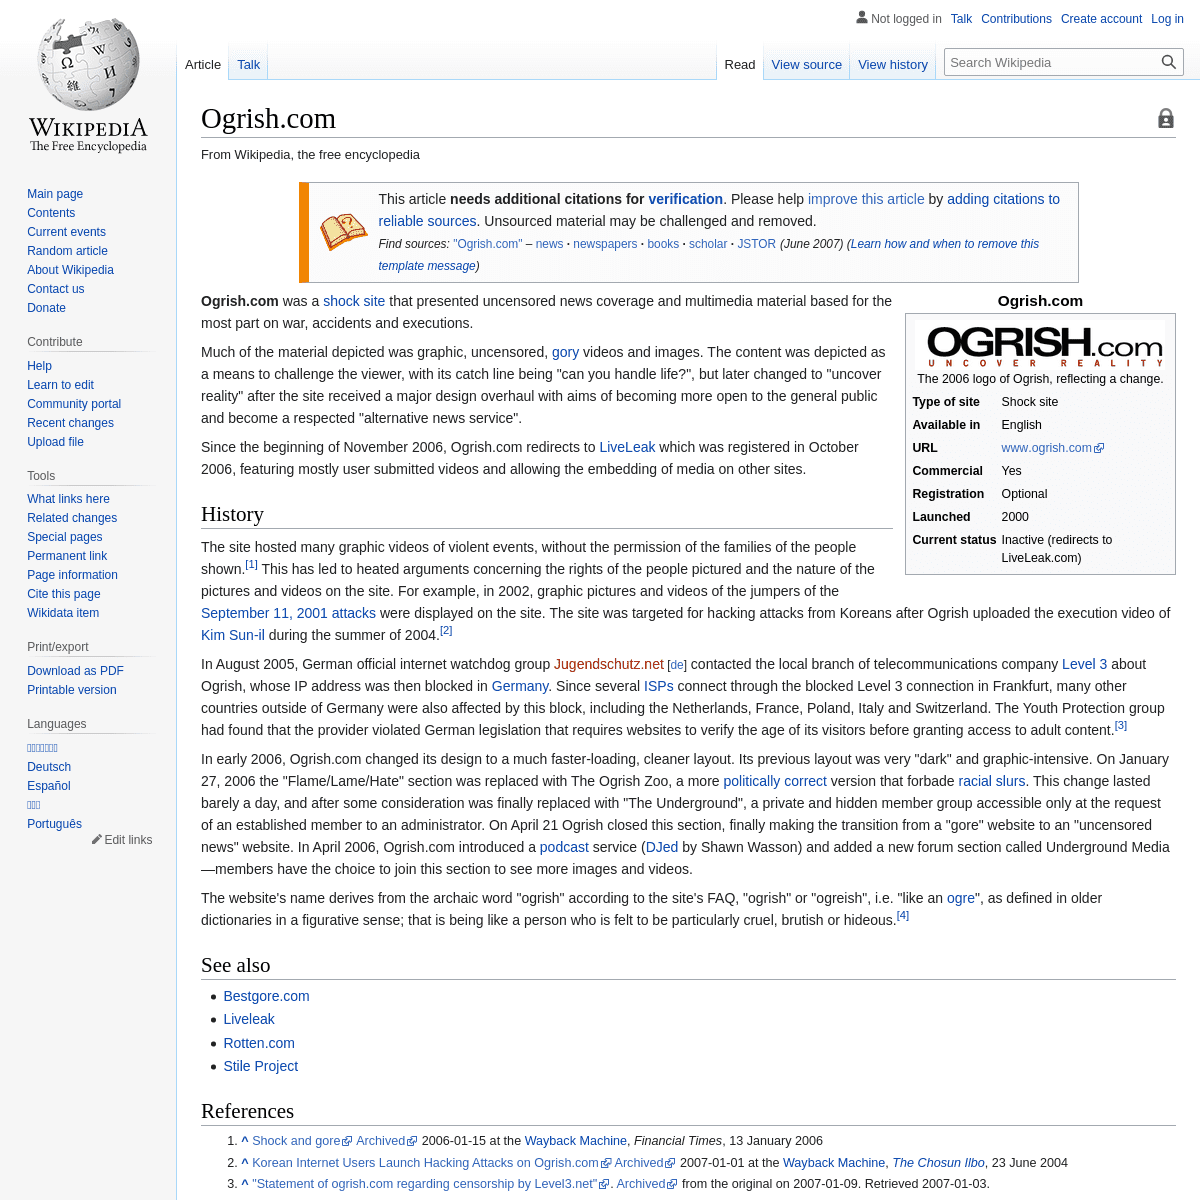 A complete backup of https://en.wikipedia.org/wiki/Ogrish.com